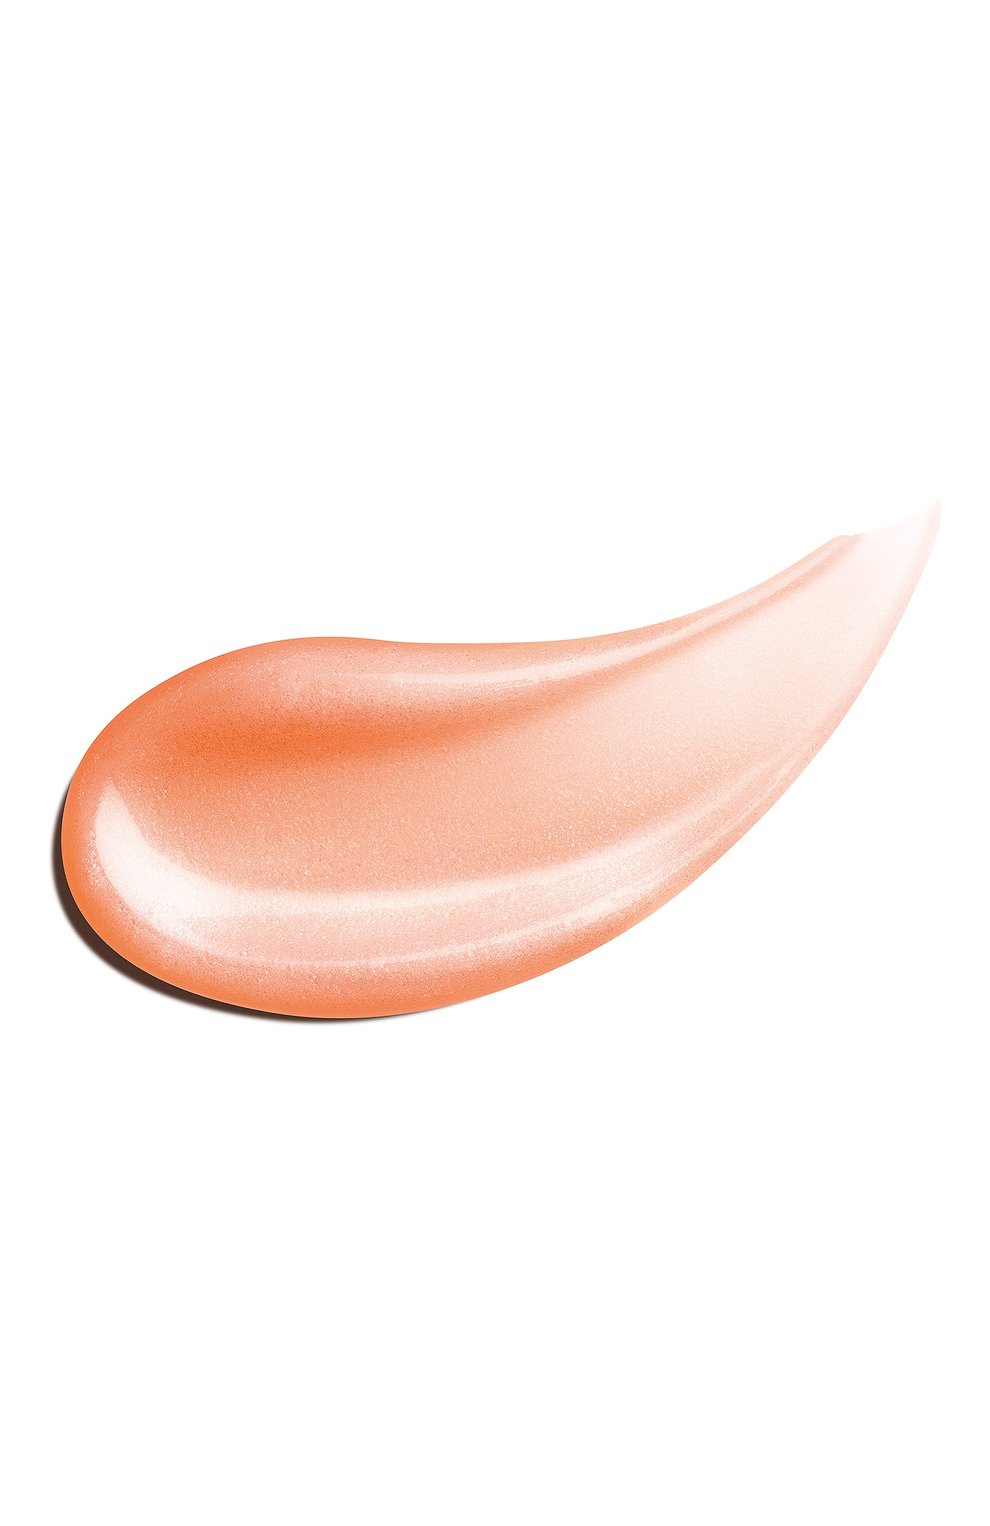 Блеск для губ lip perfector, оттенок 22 peach glow (12ml) CLARINS  цвета, арт. 80098704 | Фото 2 (Обьем косметики: 100ml; Финишное покрытие: Блестящий)